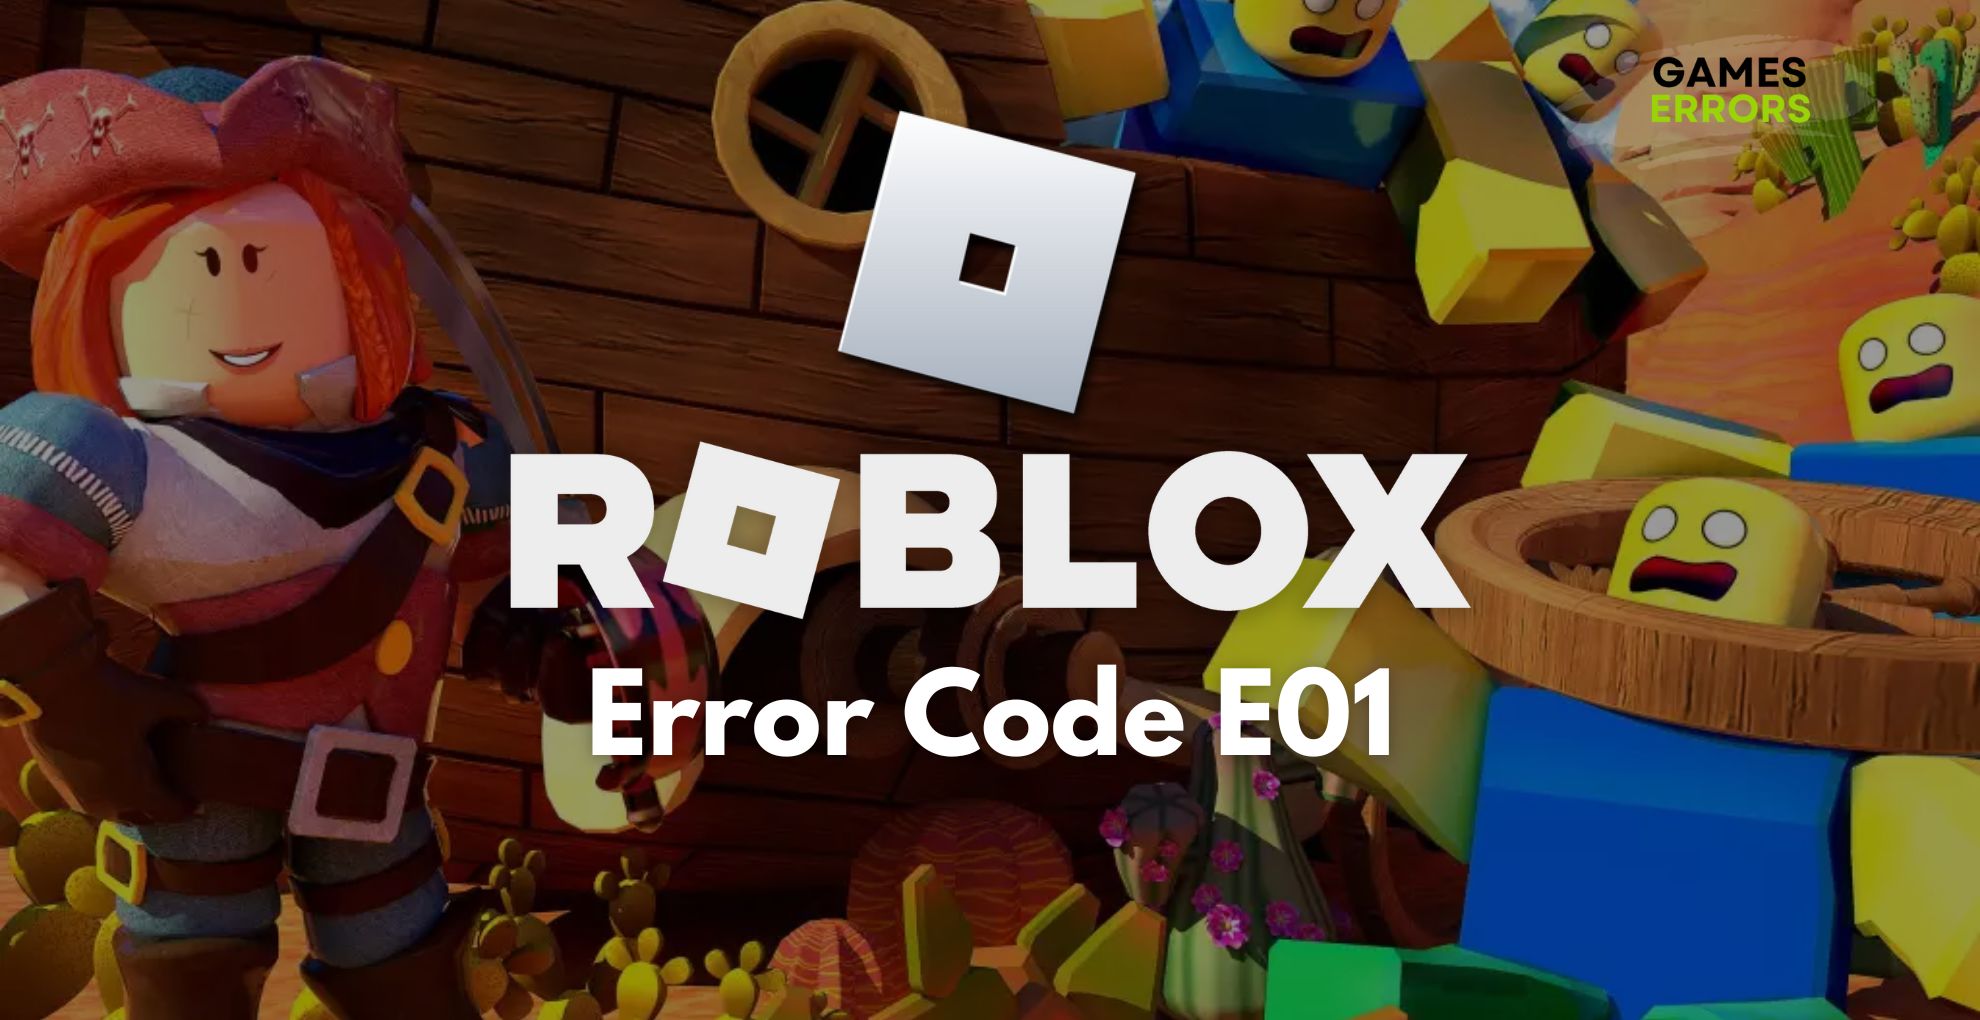 Roblox Error Code E01: How to Quickly Fix it